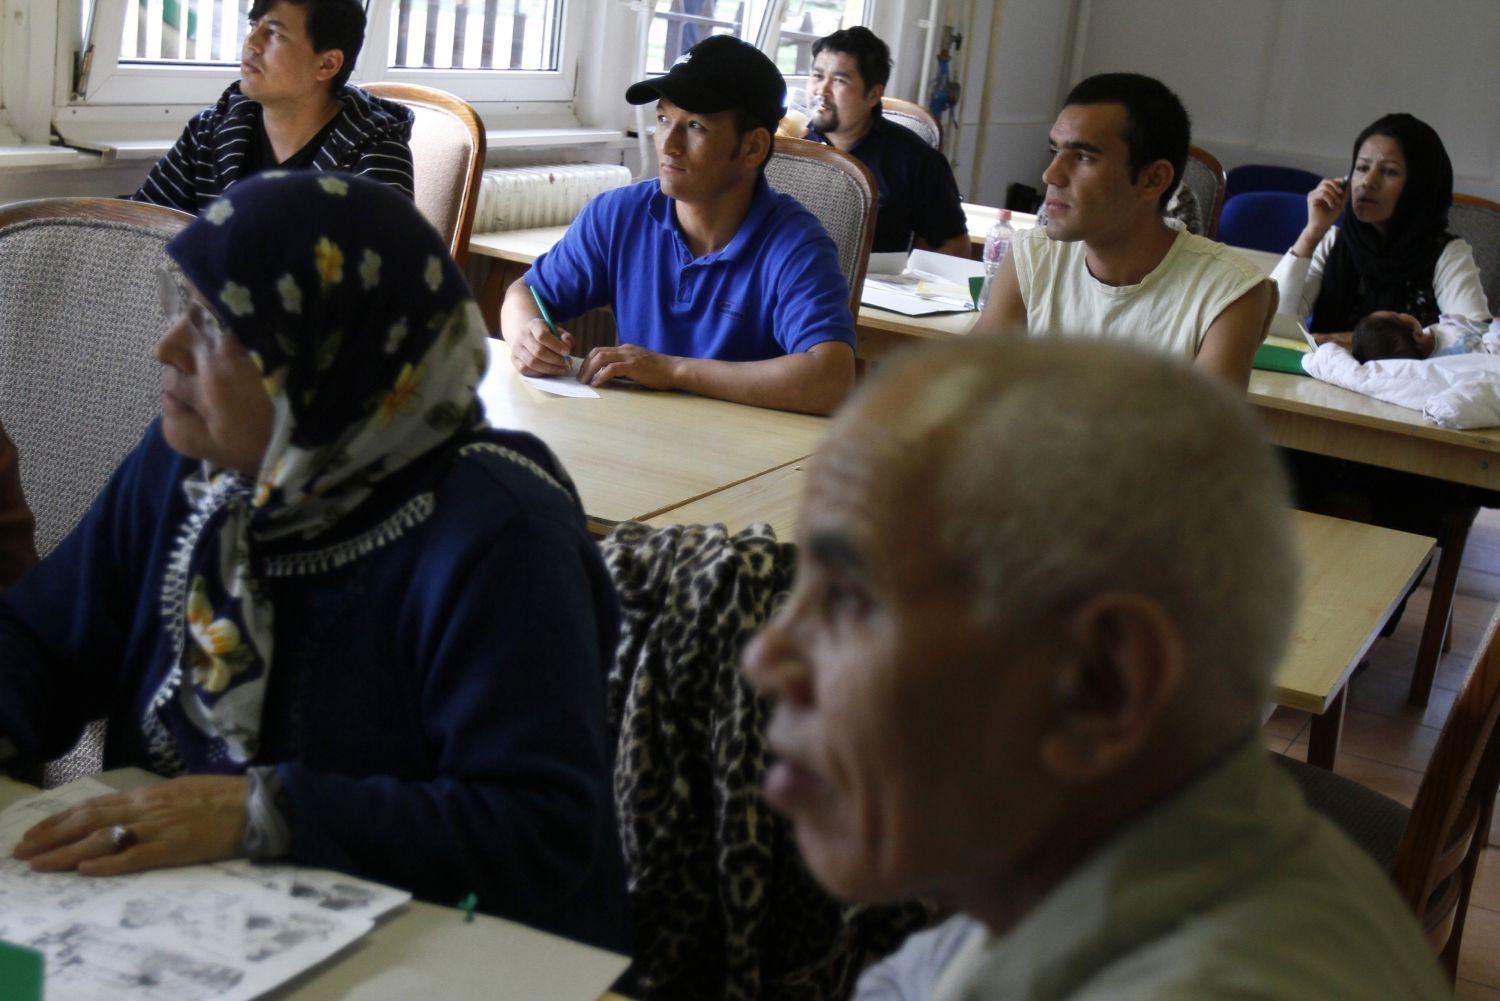 Afgán menekültek tanulnak magyarul a bicskei táborban